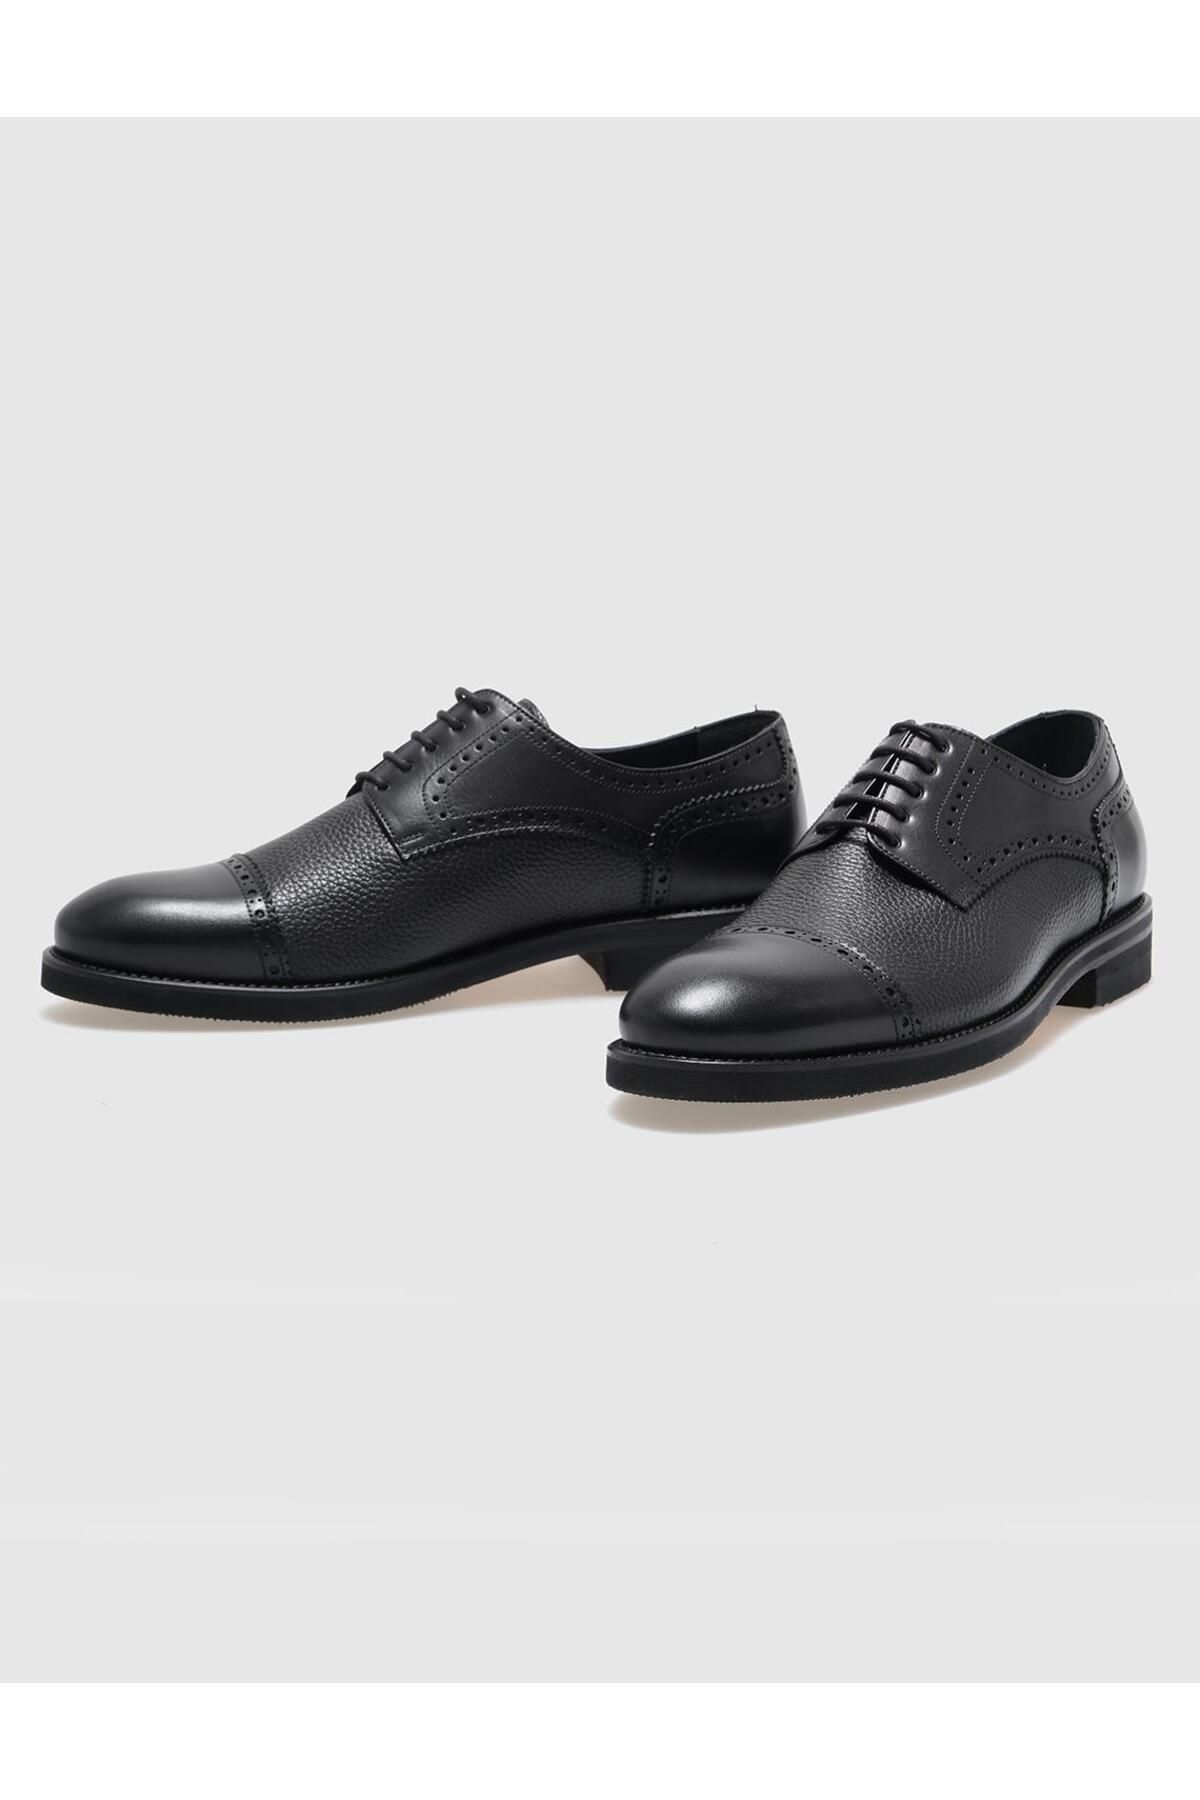 Cabani کفش های کلاسیک توری سیاه چرمی